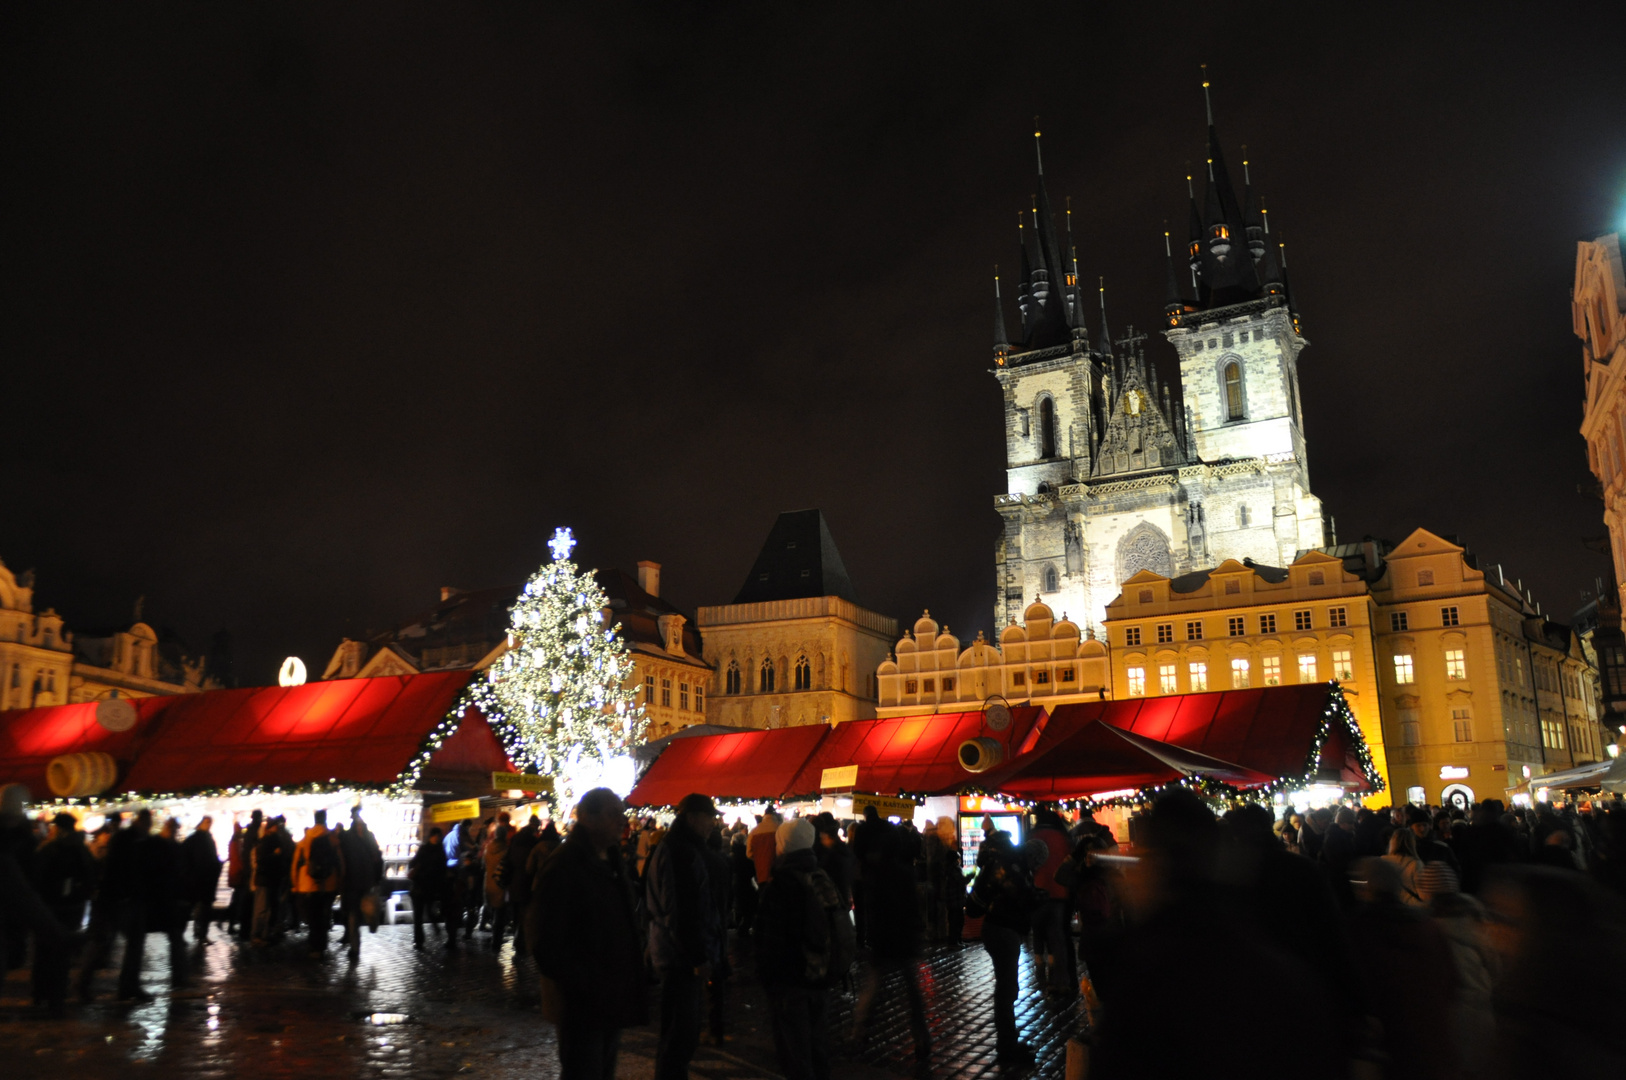 Weihnachtsmarkt 2010 am Altstädter Ring in Prag